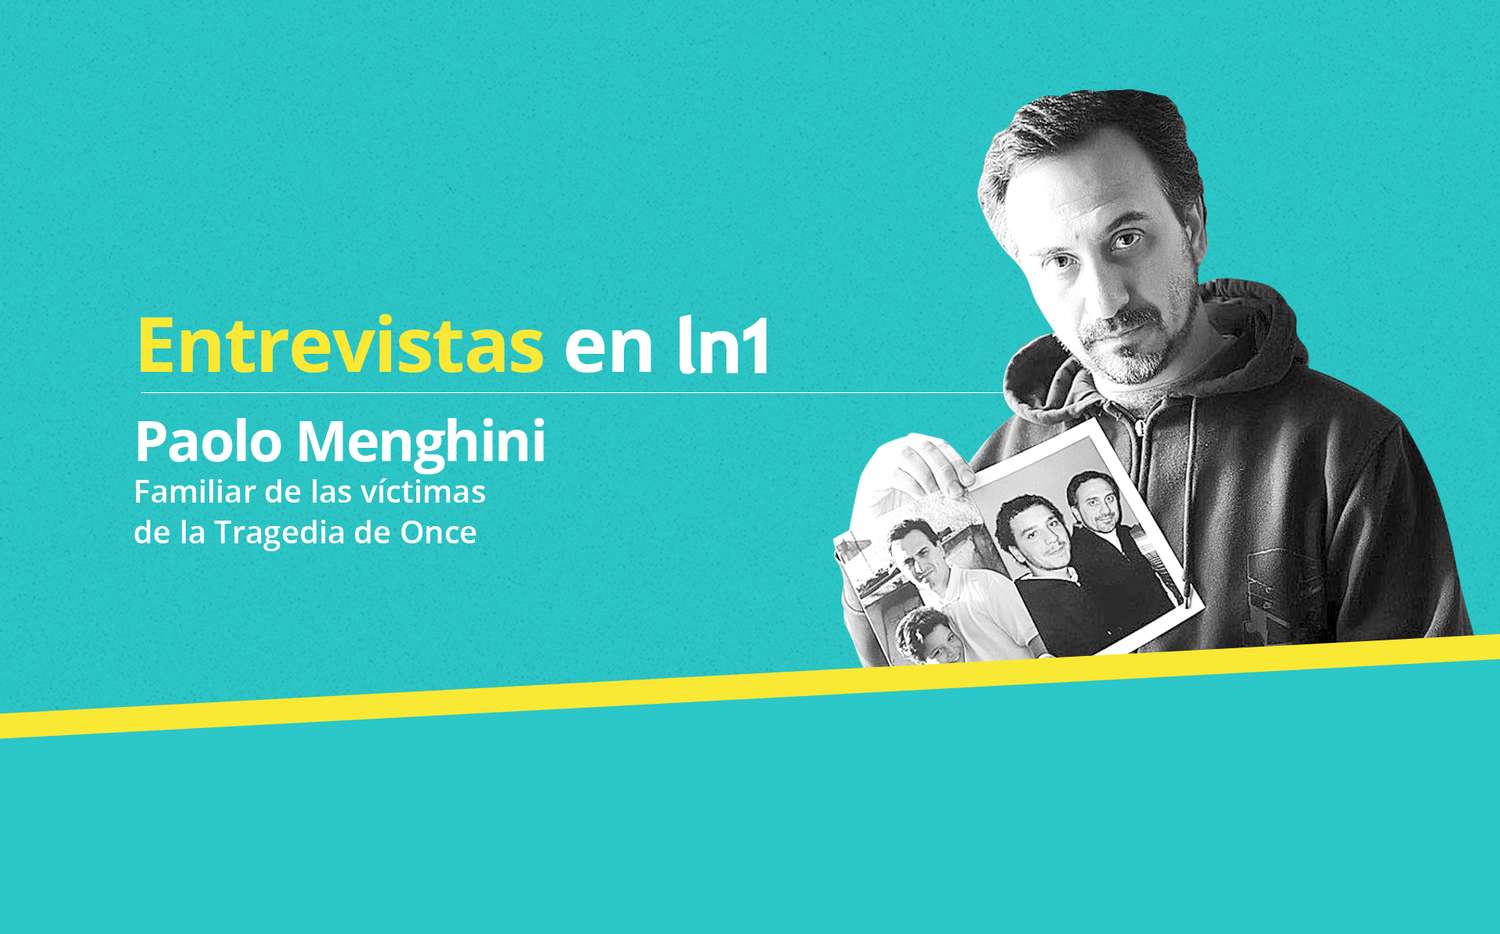 Paolo Menghini: "Necesitamos que De Vido esté preso para poder recomenzar nuestras vidas"